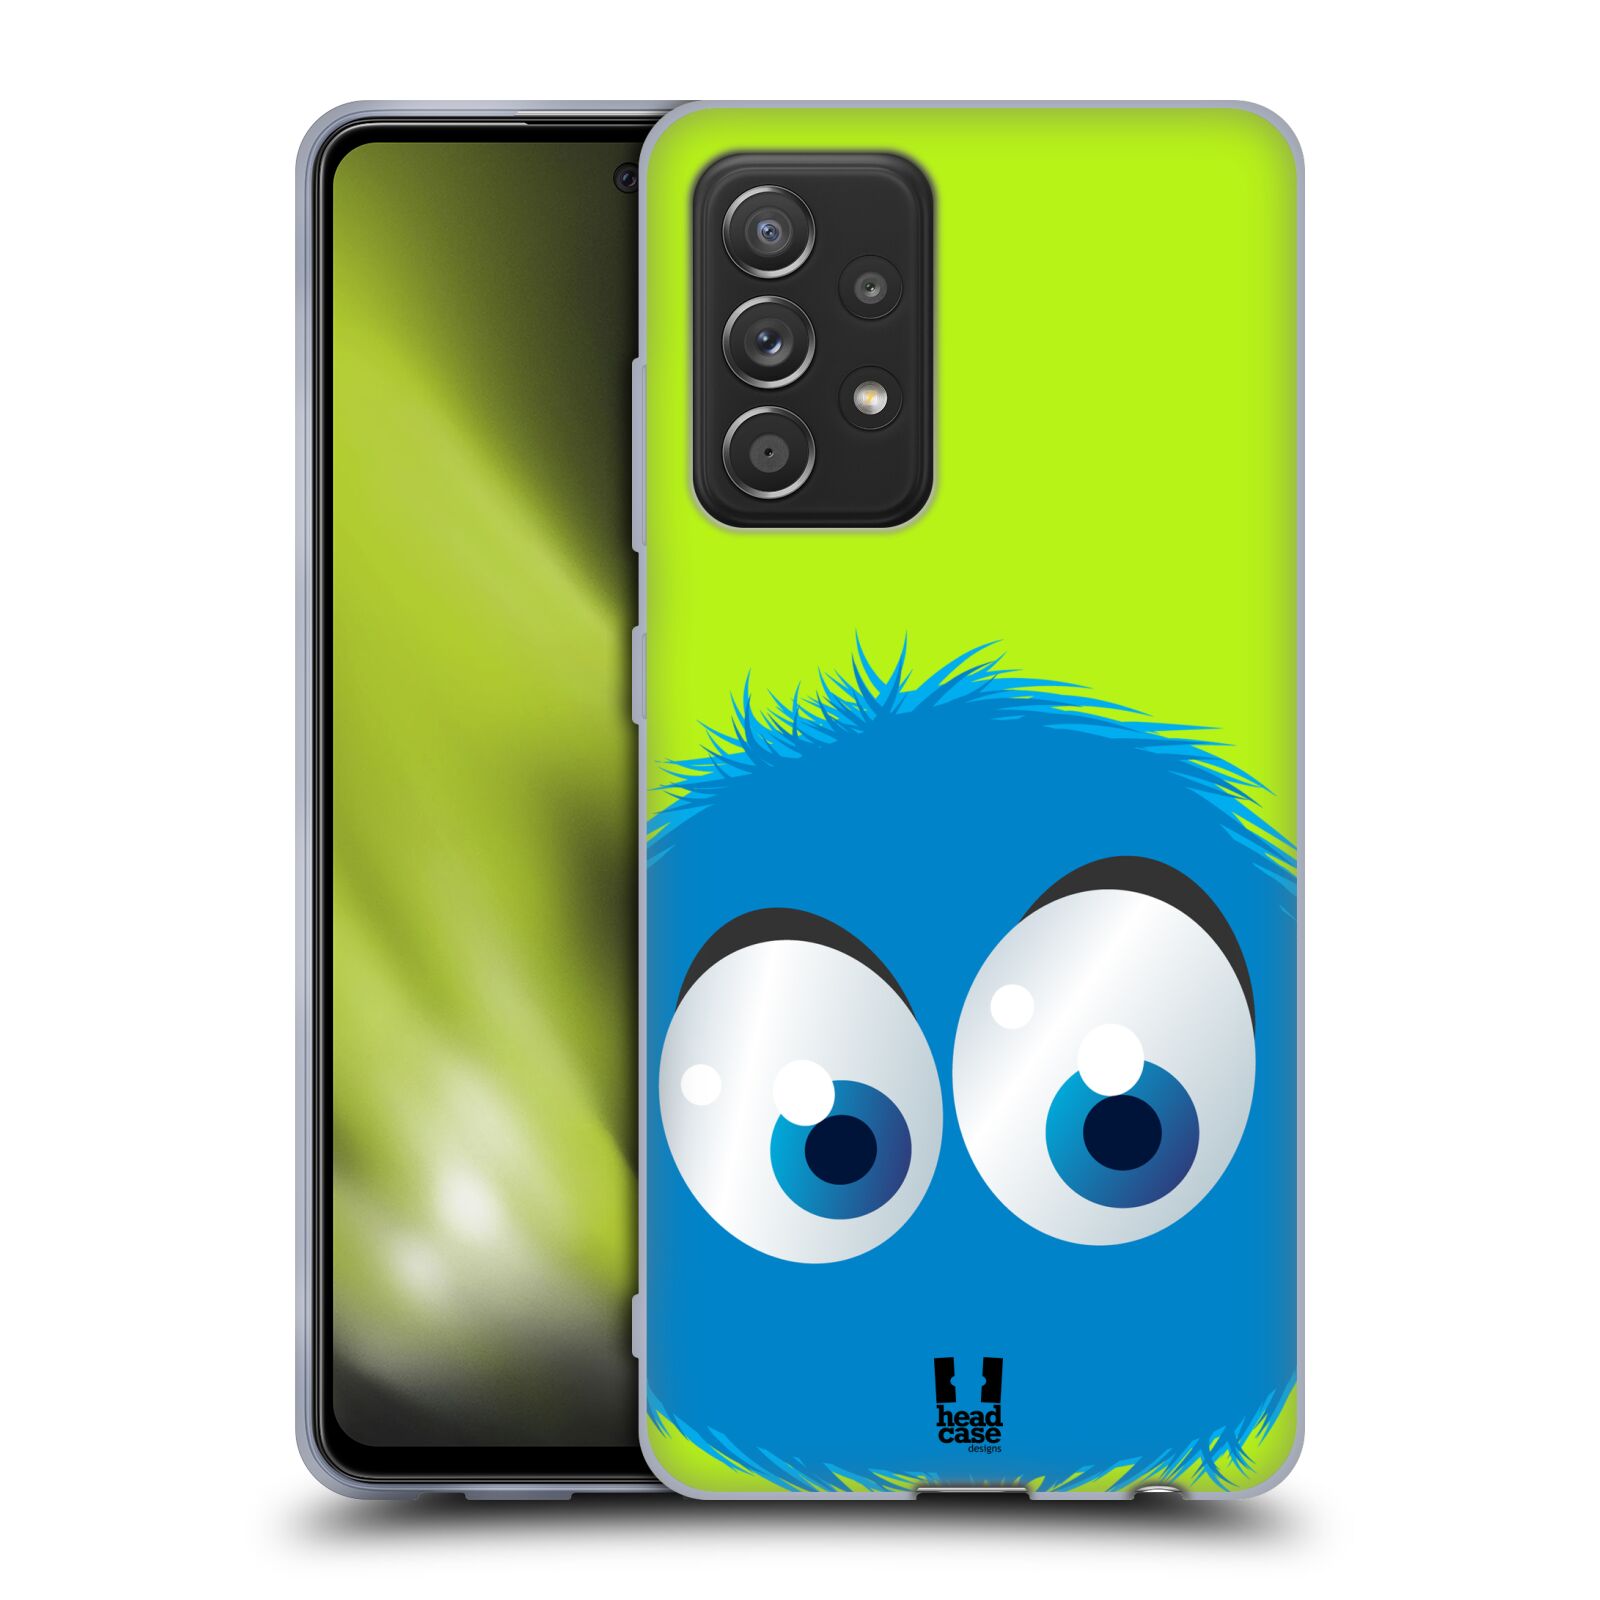 Plastový obal HEAD CASE na mobil Samsung Galaxy A52 / A52 5G / A52s 5G vzor Barevný chlupatý smajlík MODRÁ zelené pozadí